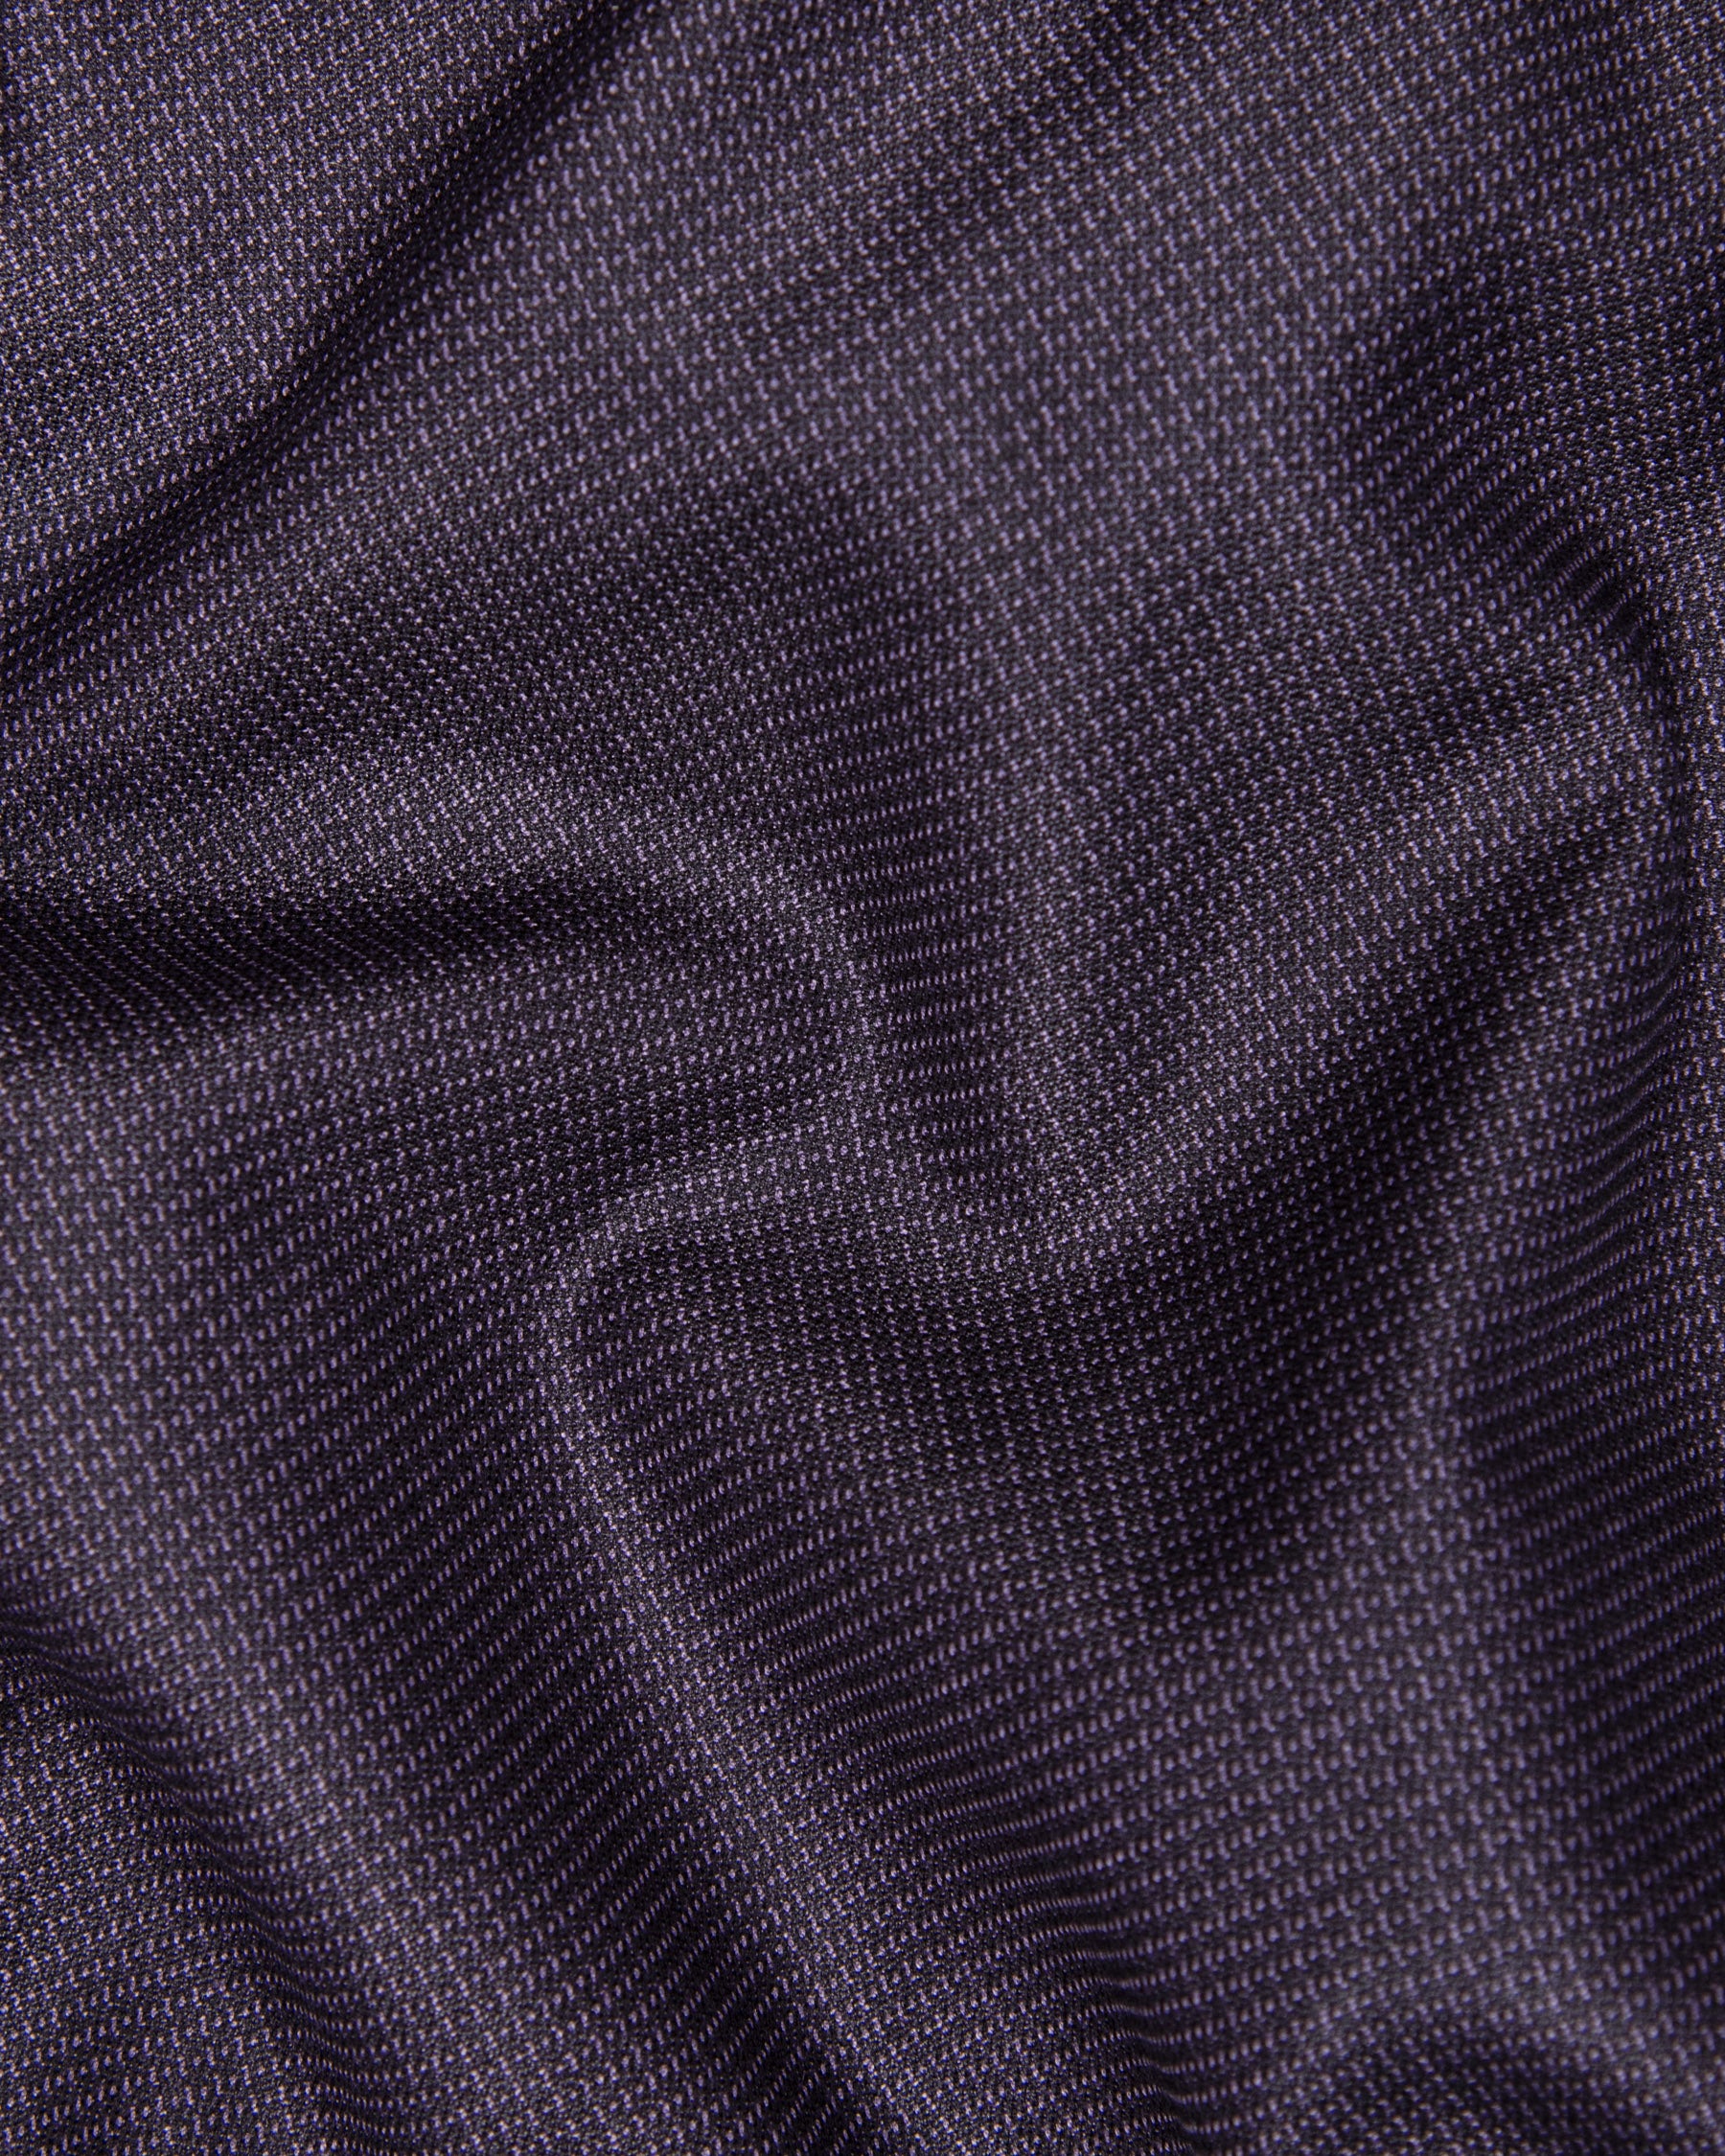 Martinique Violet Subtle Checked Woolrich Pant